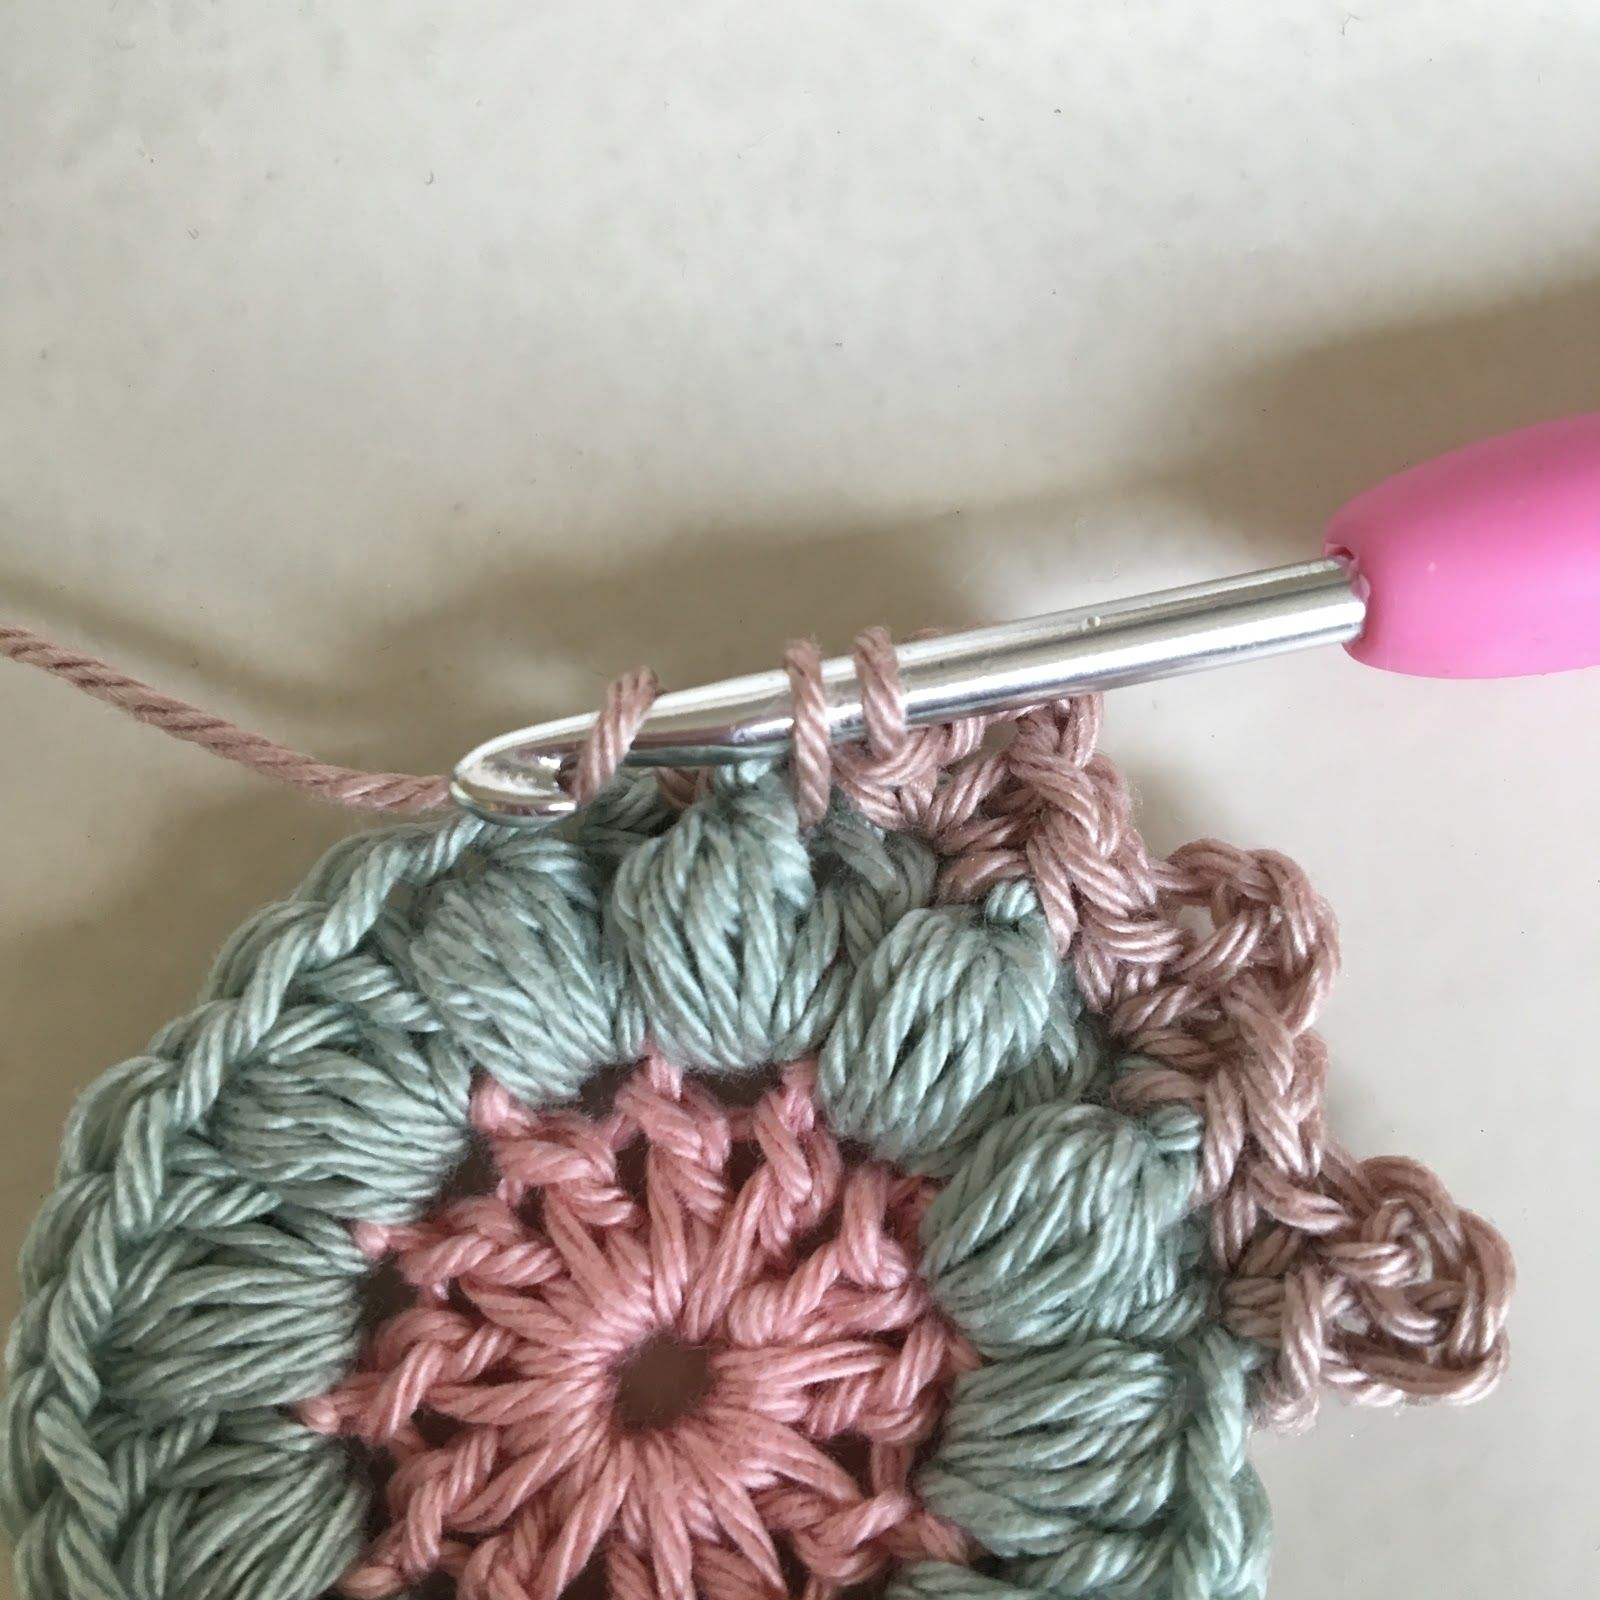 Relief fastmaska framifrån / front post single crochet Stick in nålen